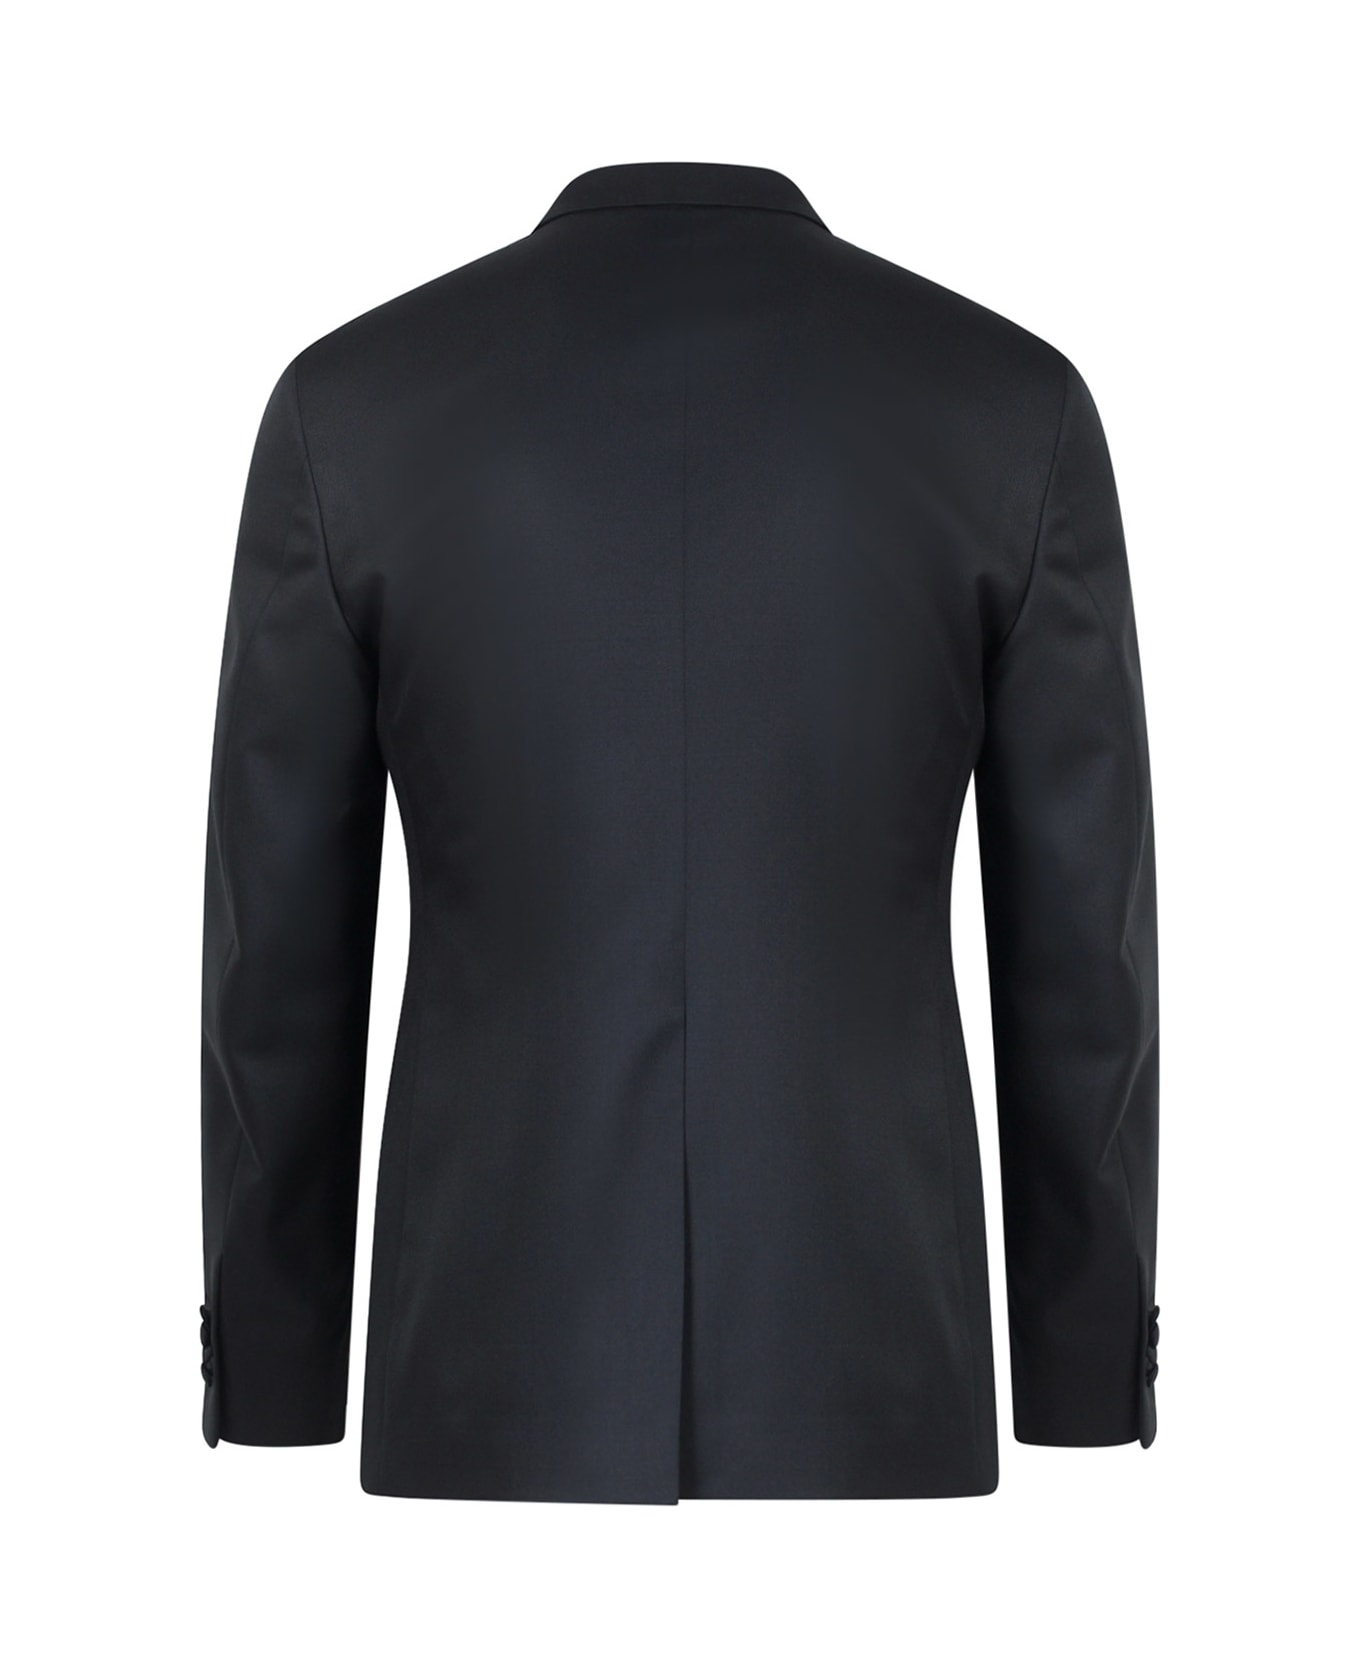 Tagliatore Tuxedo - Black スーツ